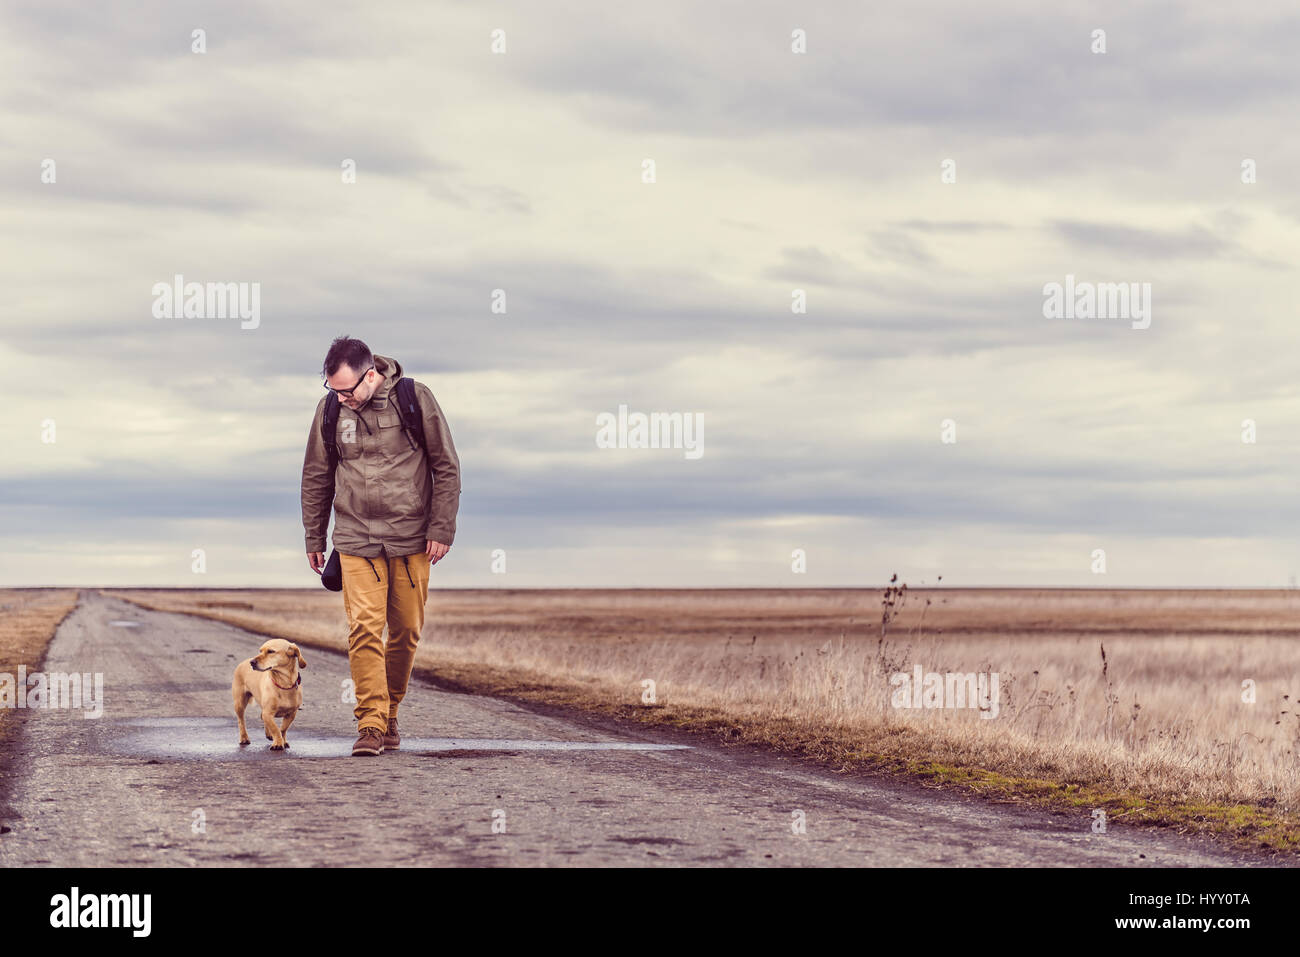 Escursionista e cane a camminare lungo una strada in un giorno nuvoloso Foto Stock